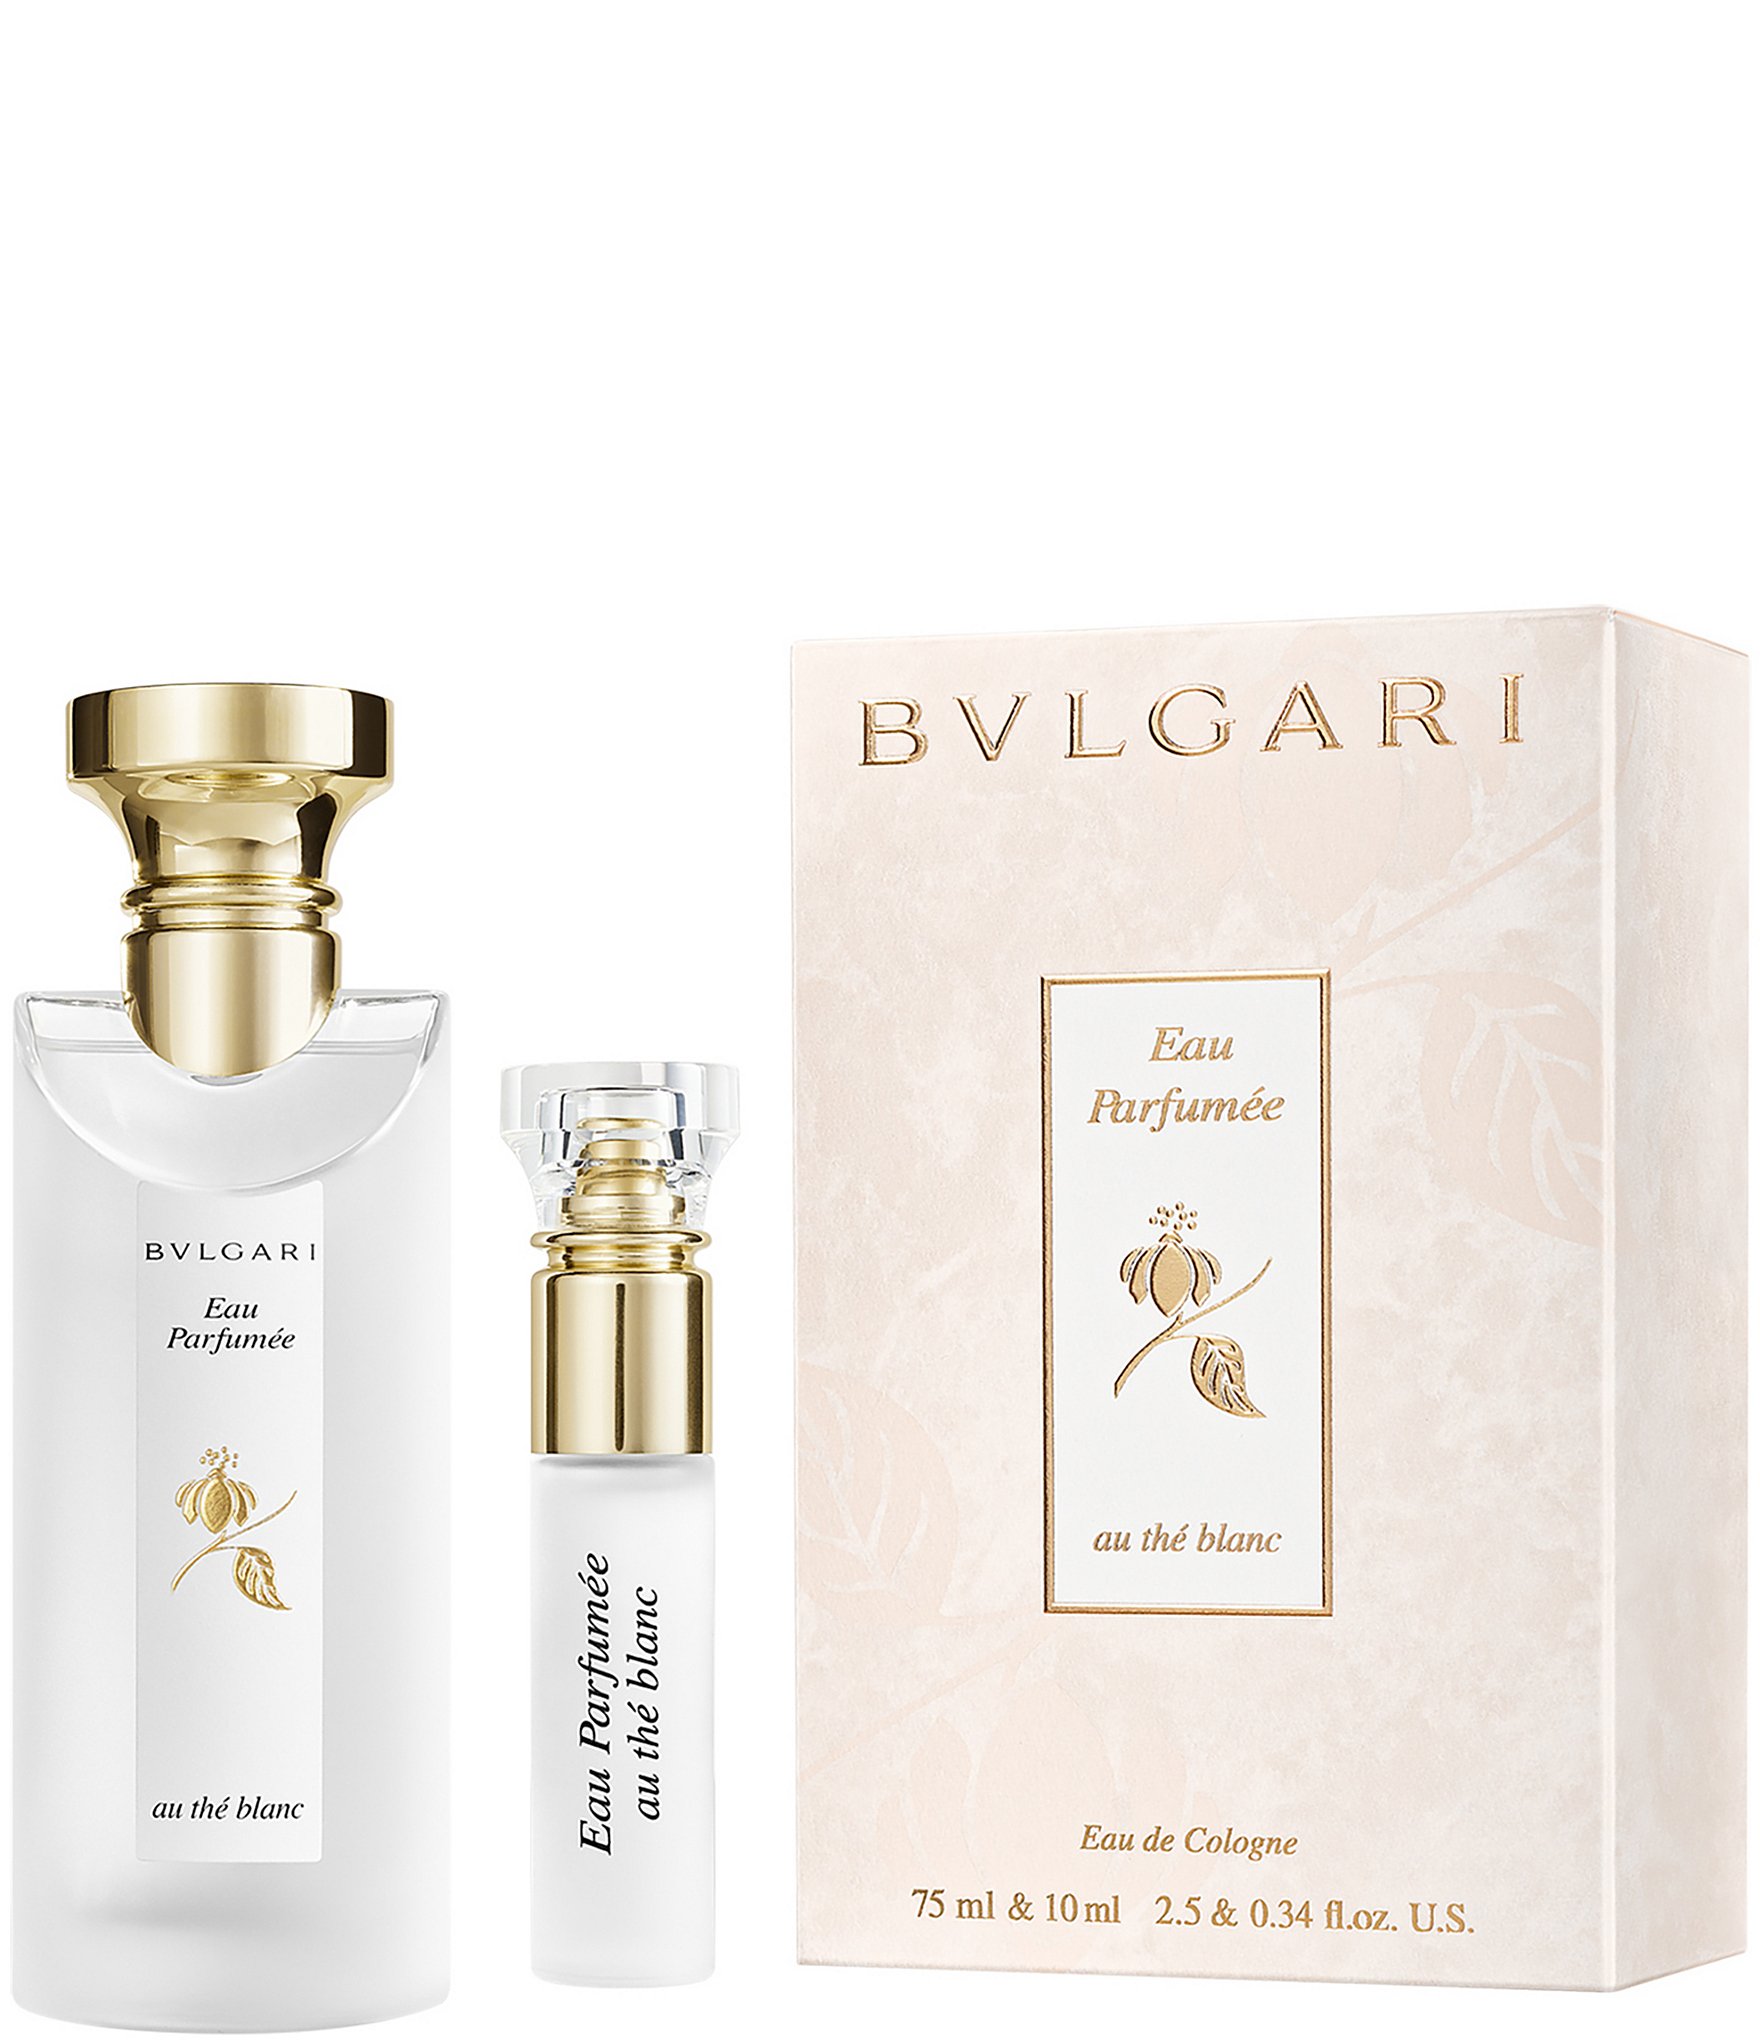 Bvlgari Eau the blanc Eau de Cologne Gift Set | Dillard's